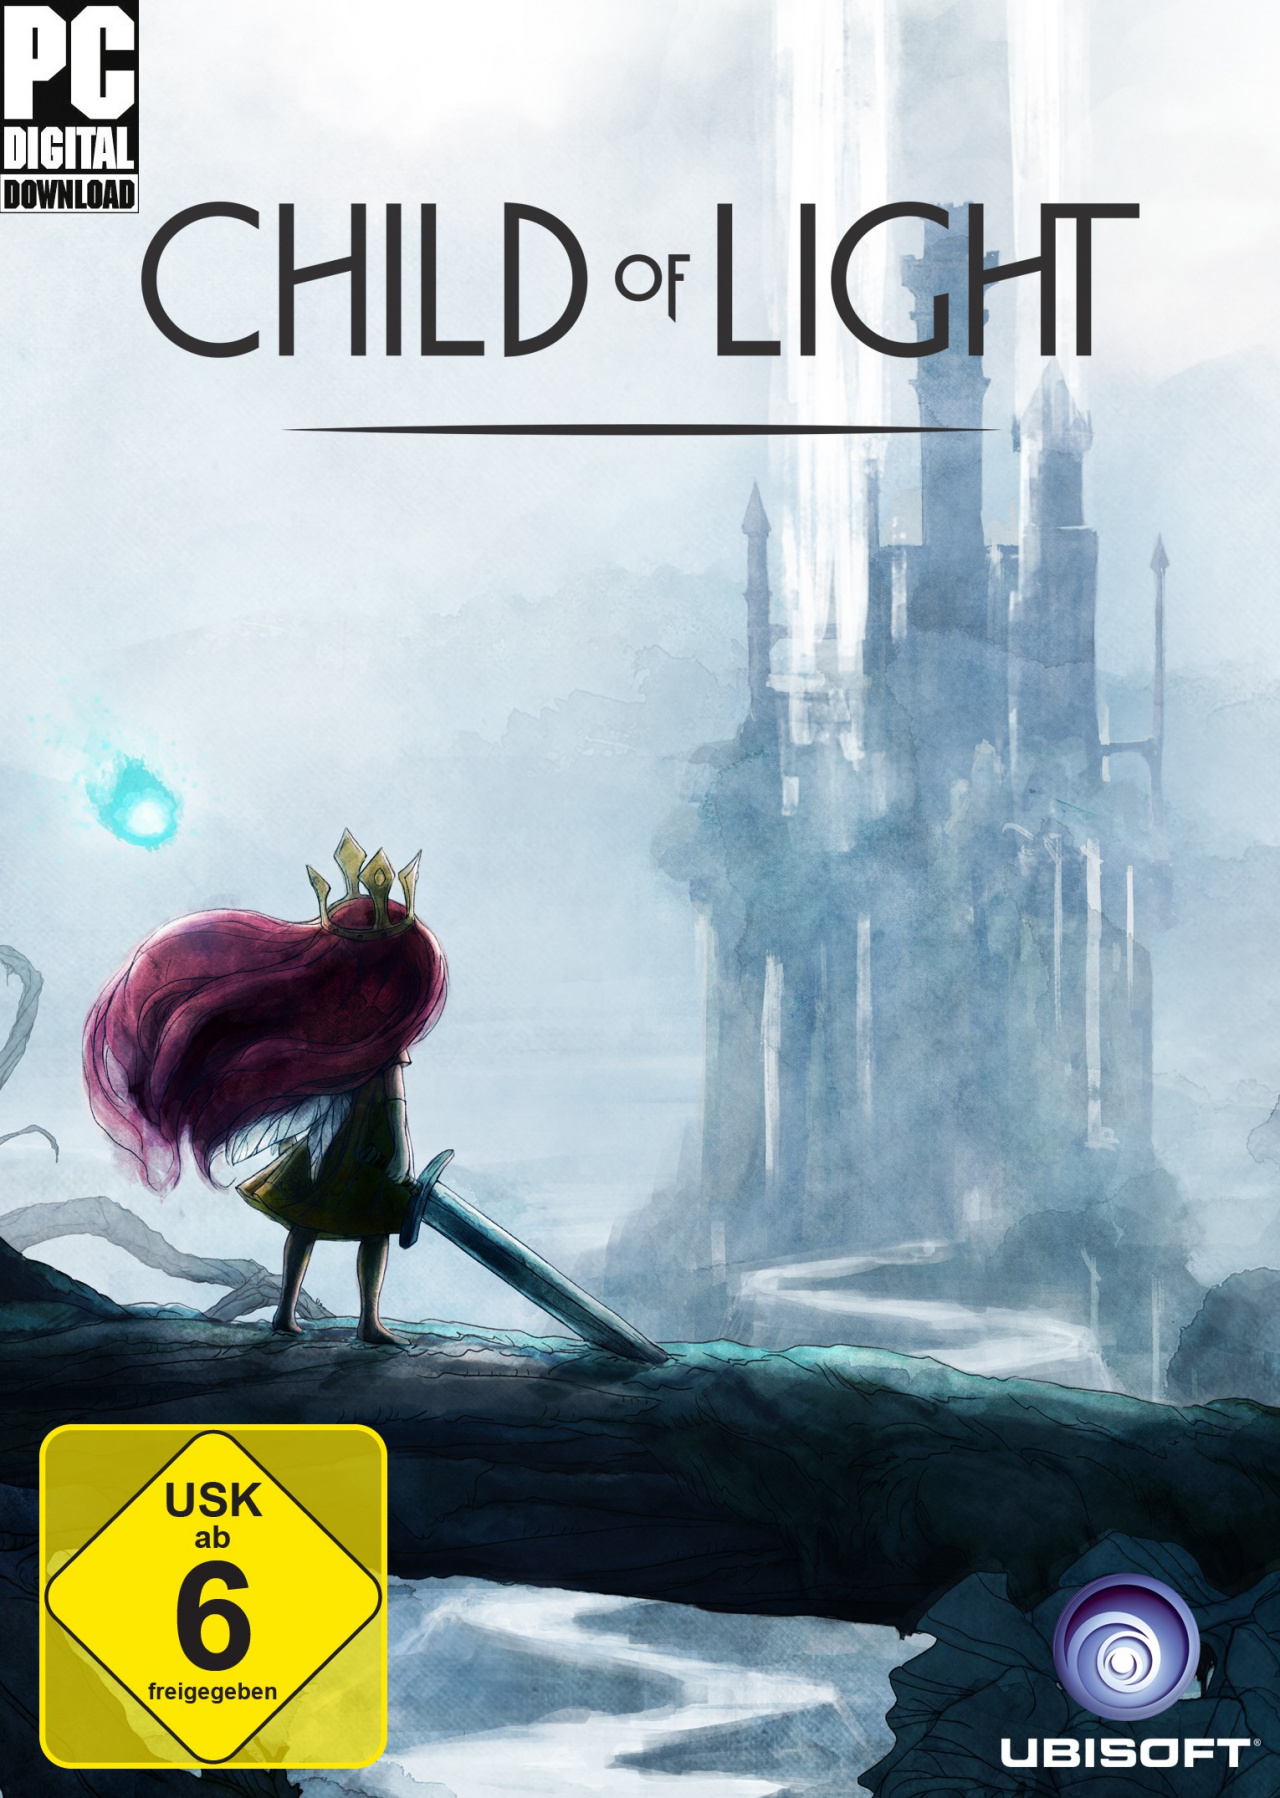 Child of light отзывы